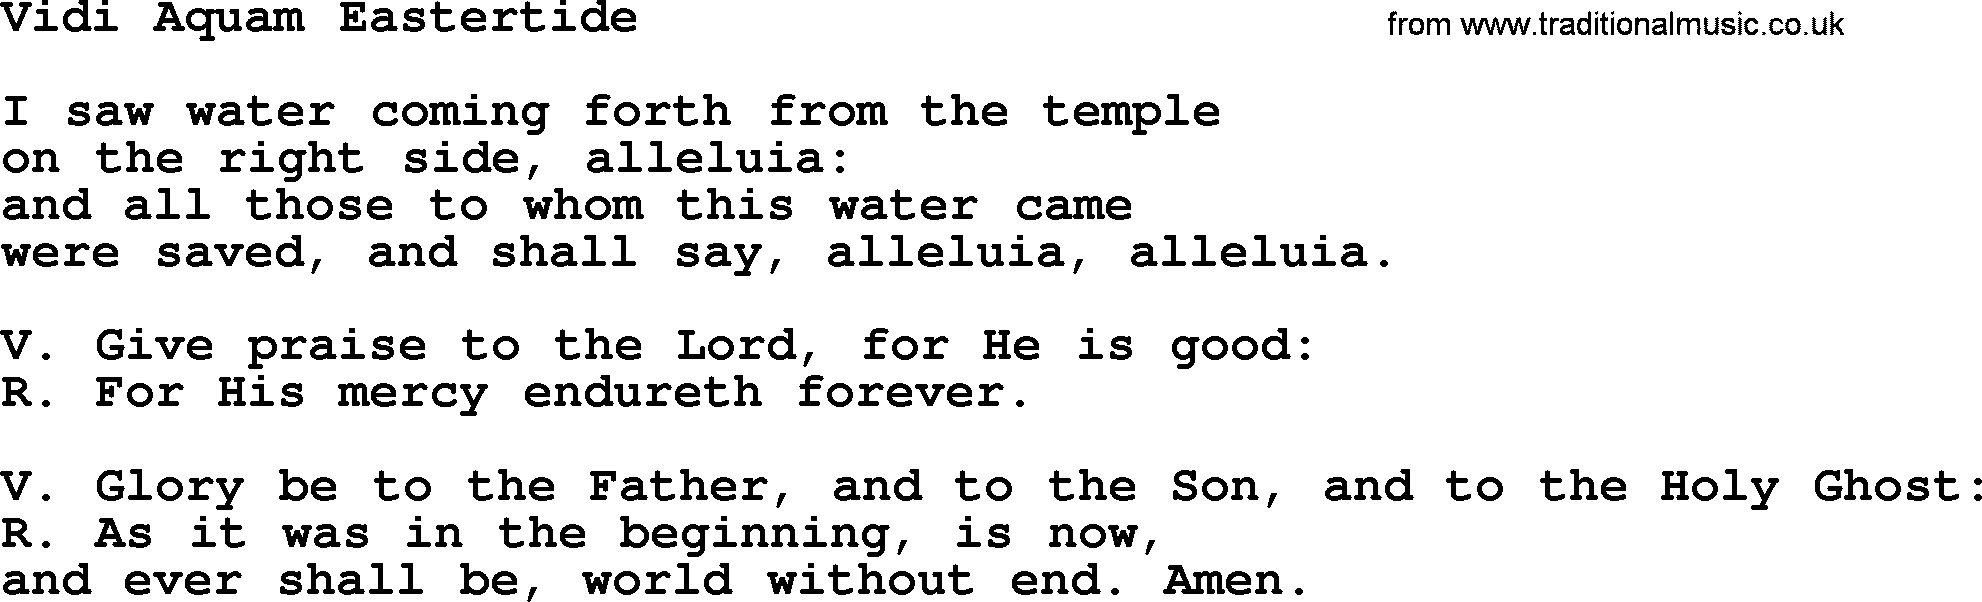 Catholic Hymn: Vidi Aquam Eastertide lyrics with PDF